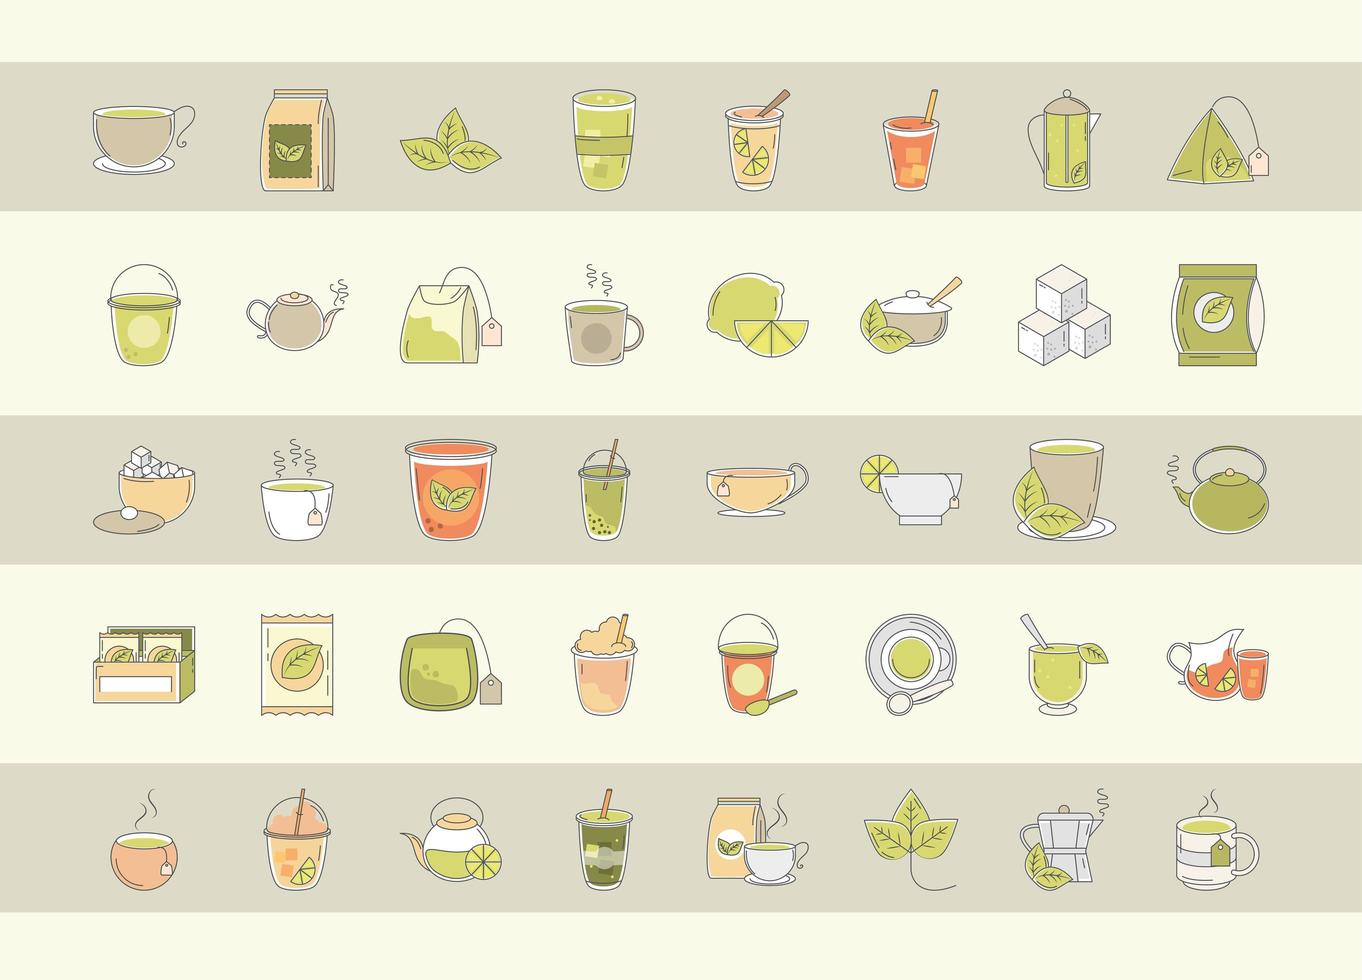 thé boisson fraîche théière traditionnelle tasses sachet de thé feuilles de sucre icônes définies ligne et remplissage vecteur